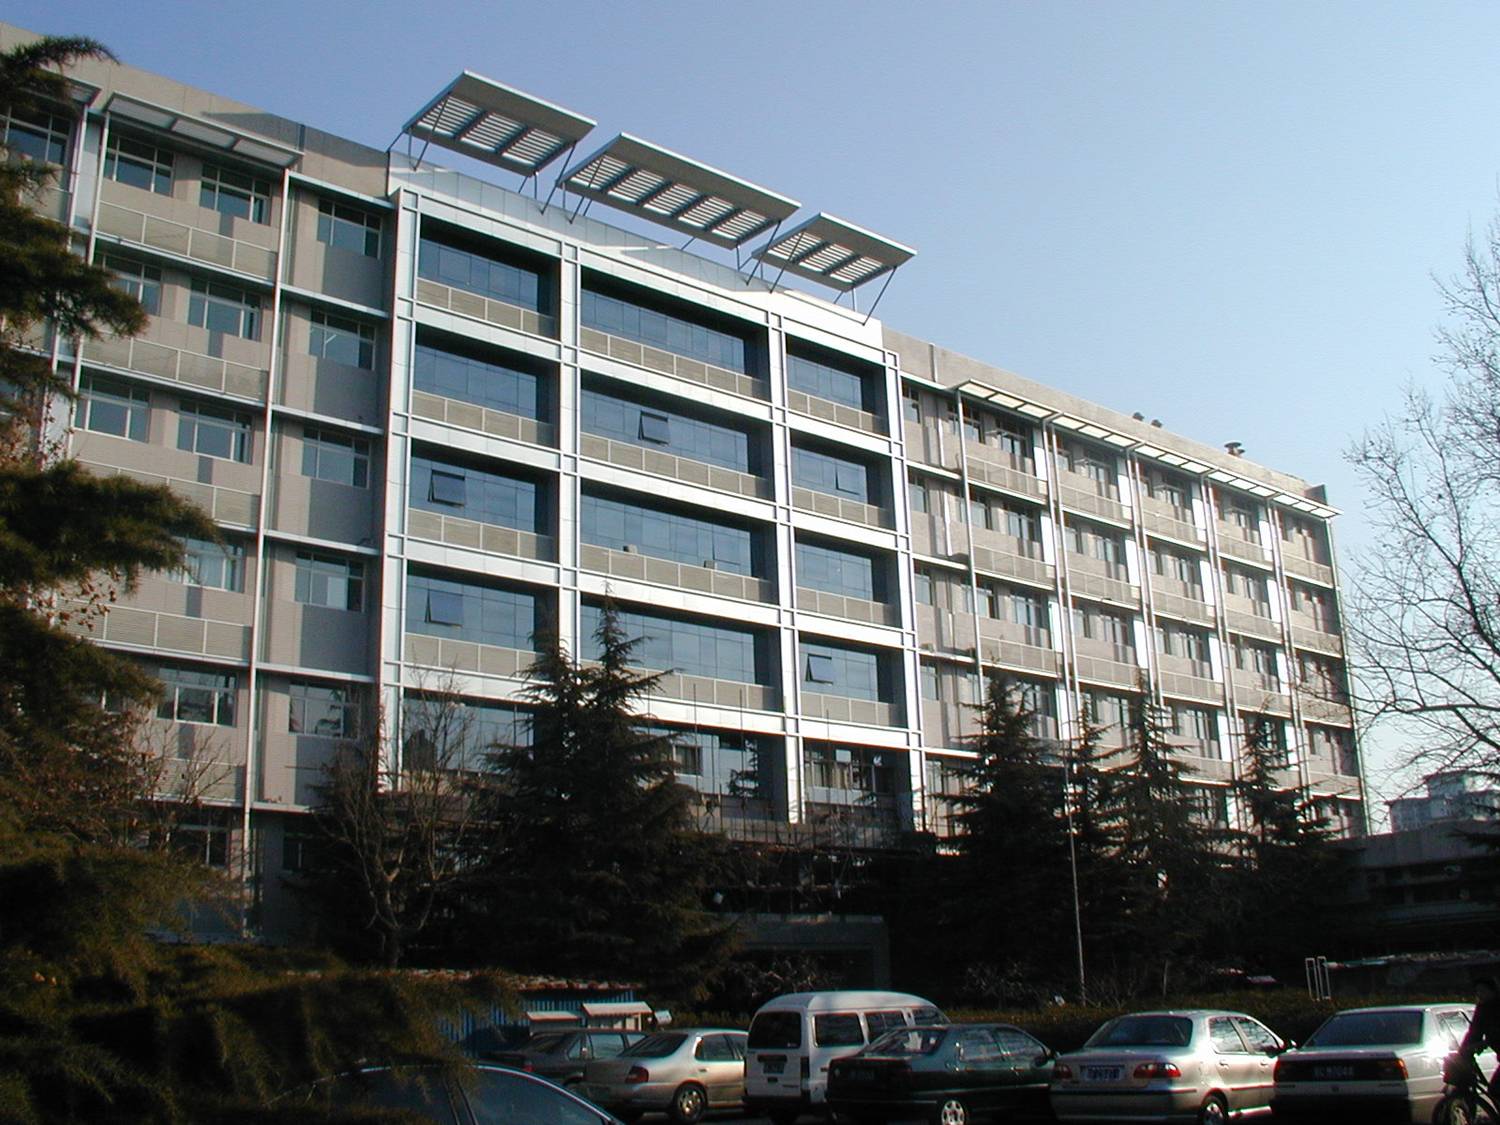 光電子器件國家工程研究中心